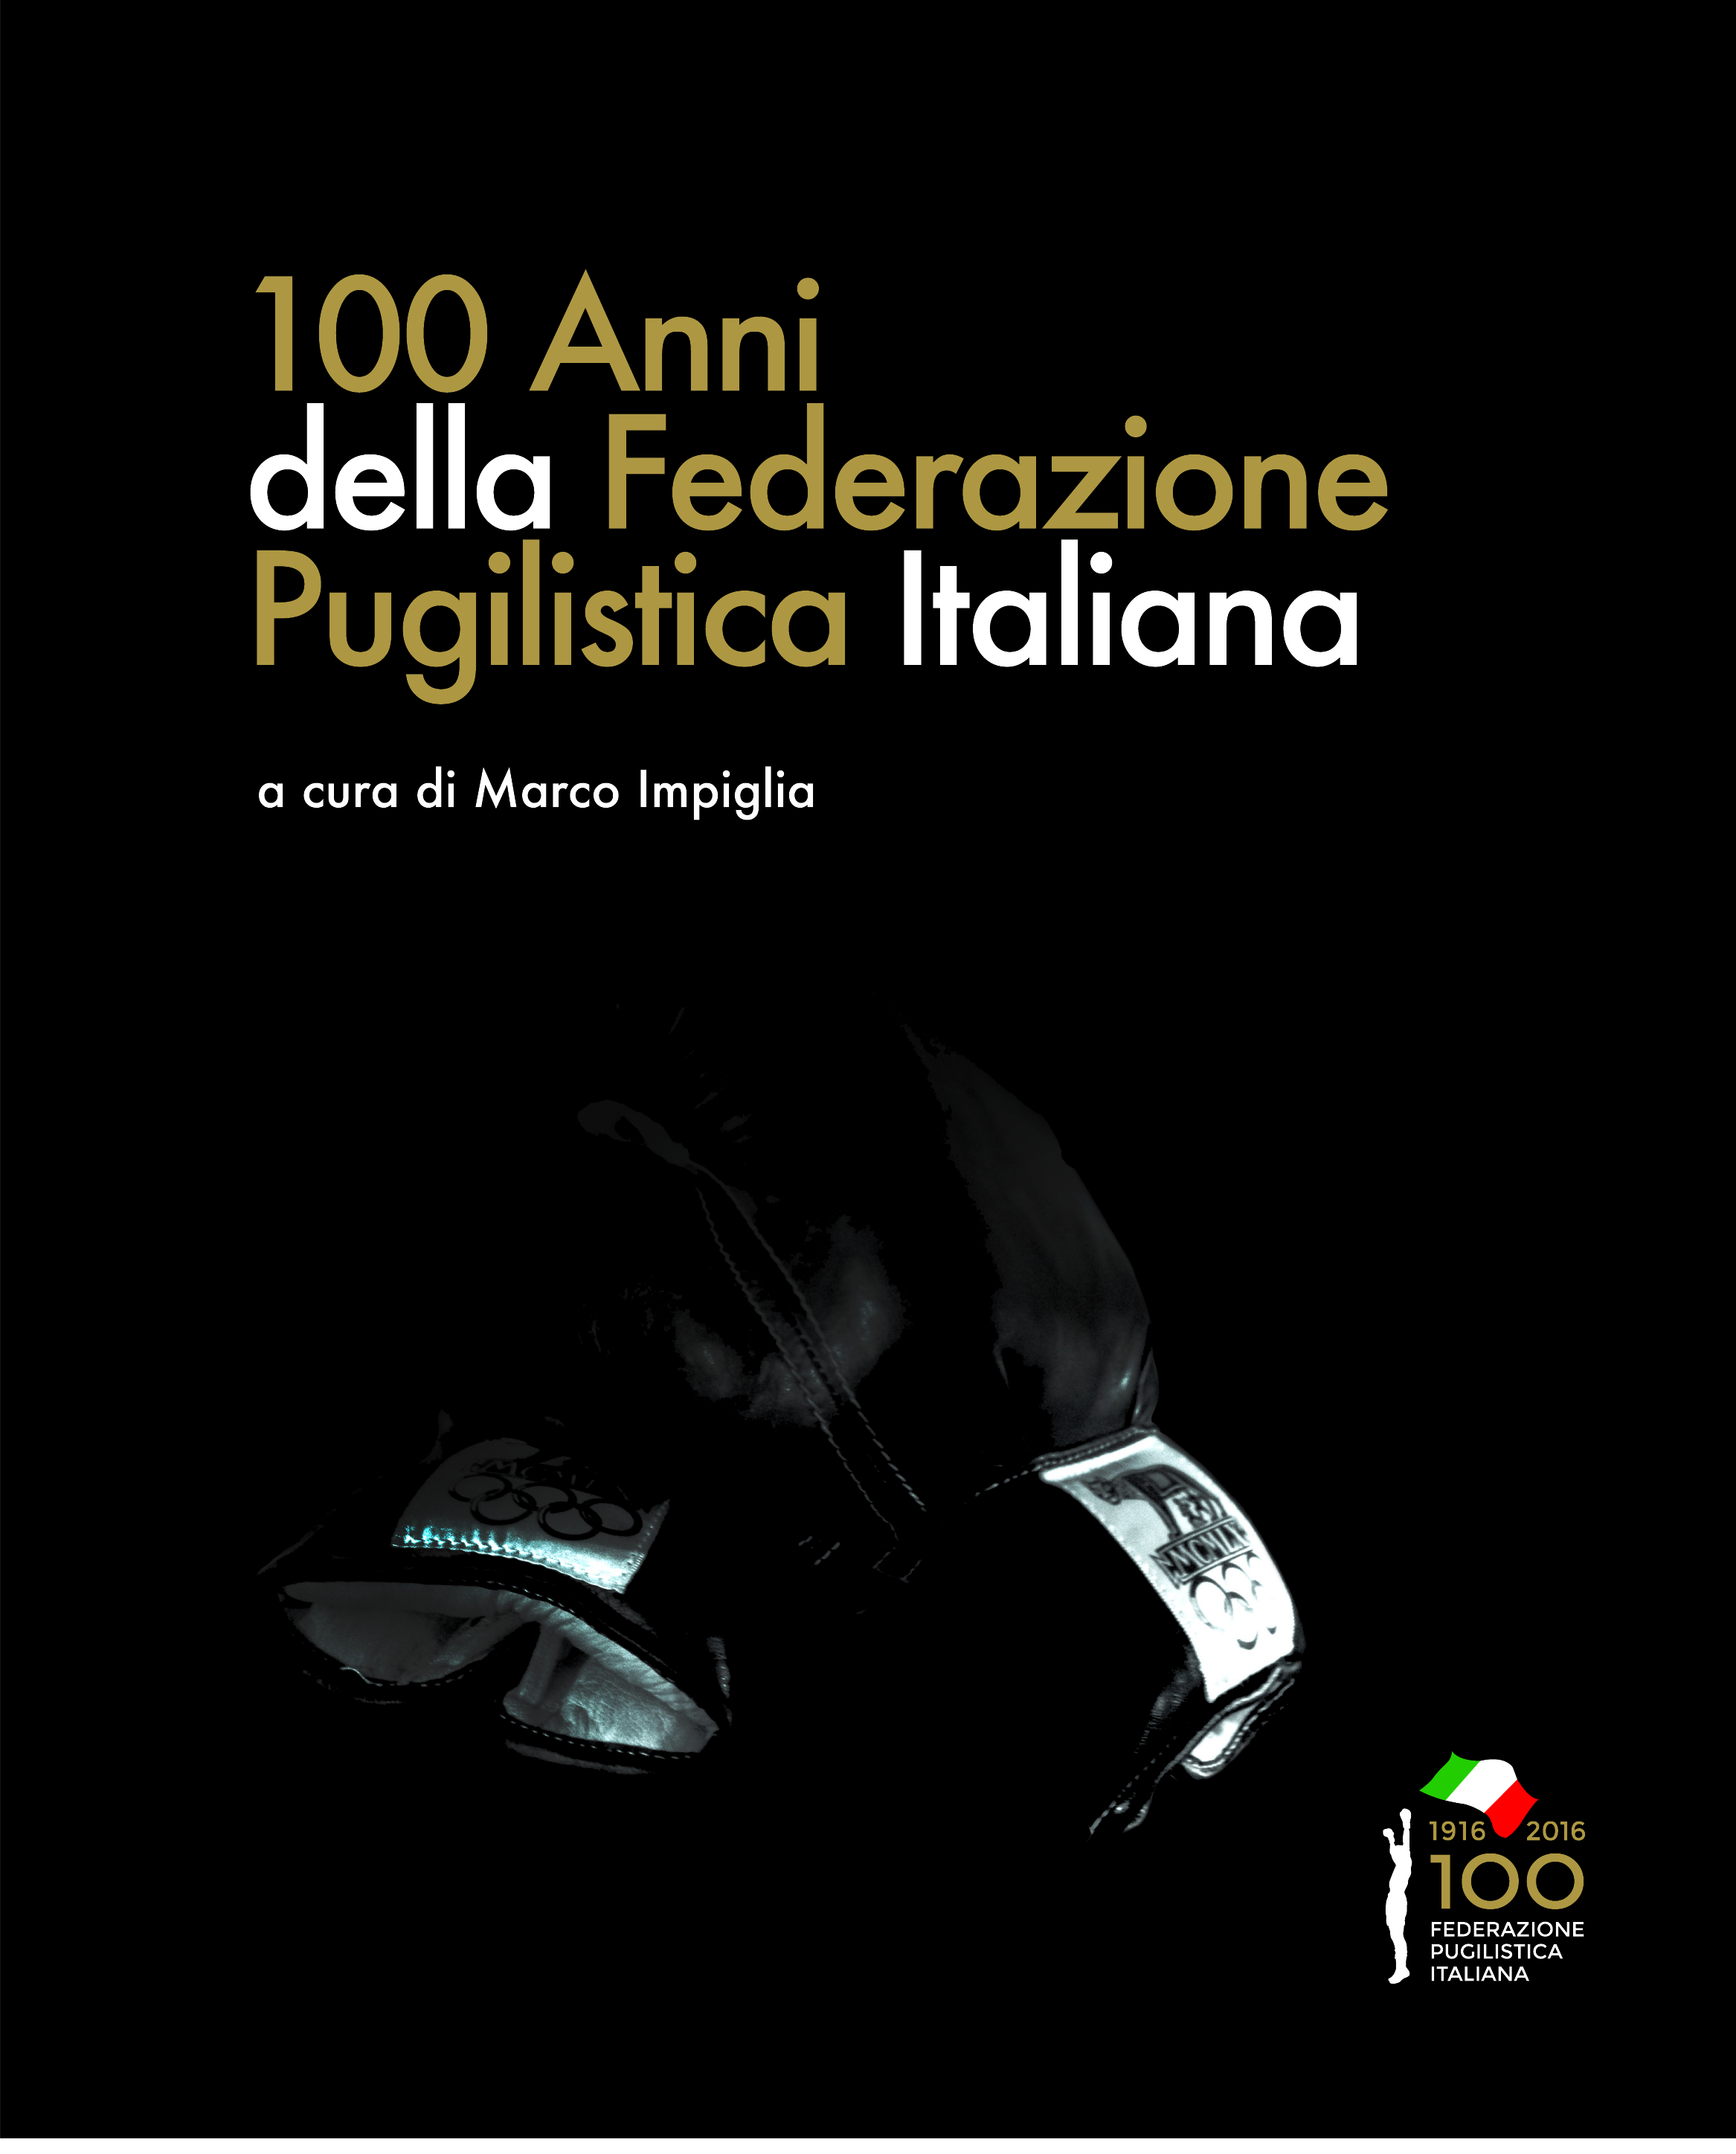 Oggi la Presentazione Ufficiale del Libro "100 Anni della Federazione Pugilistica Italiana" durante il Vernissage di Apertura della Mostra #100FPI 